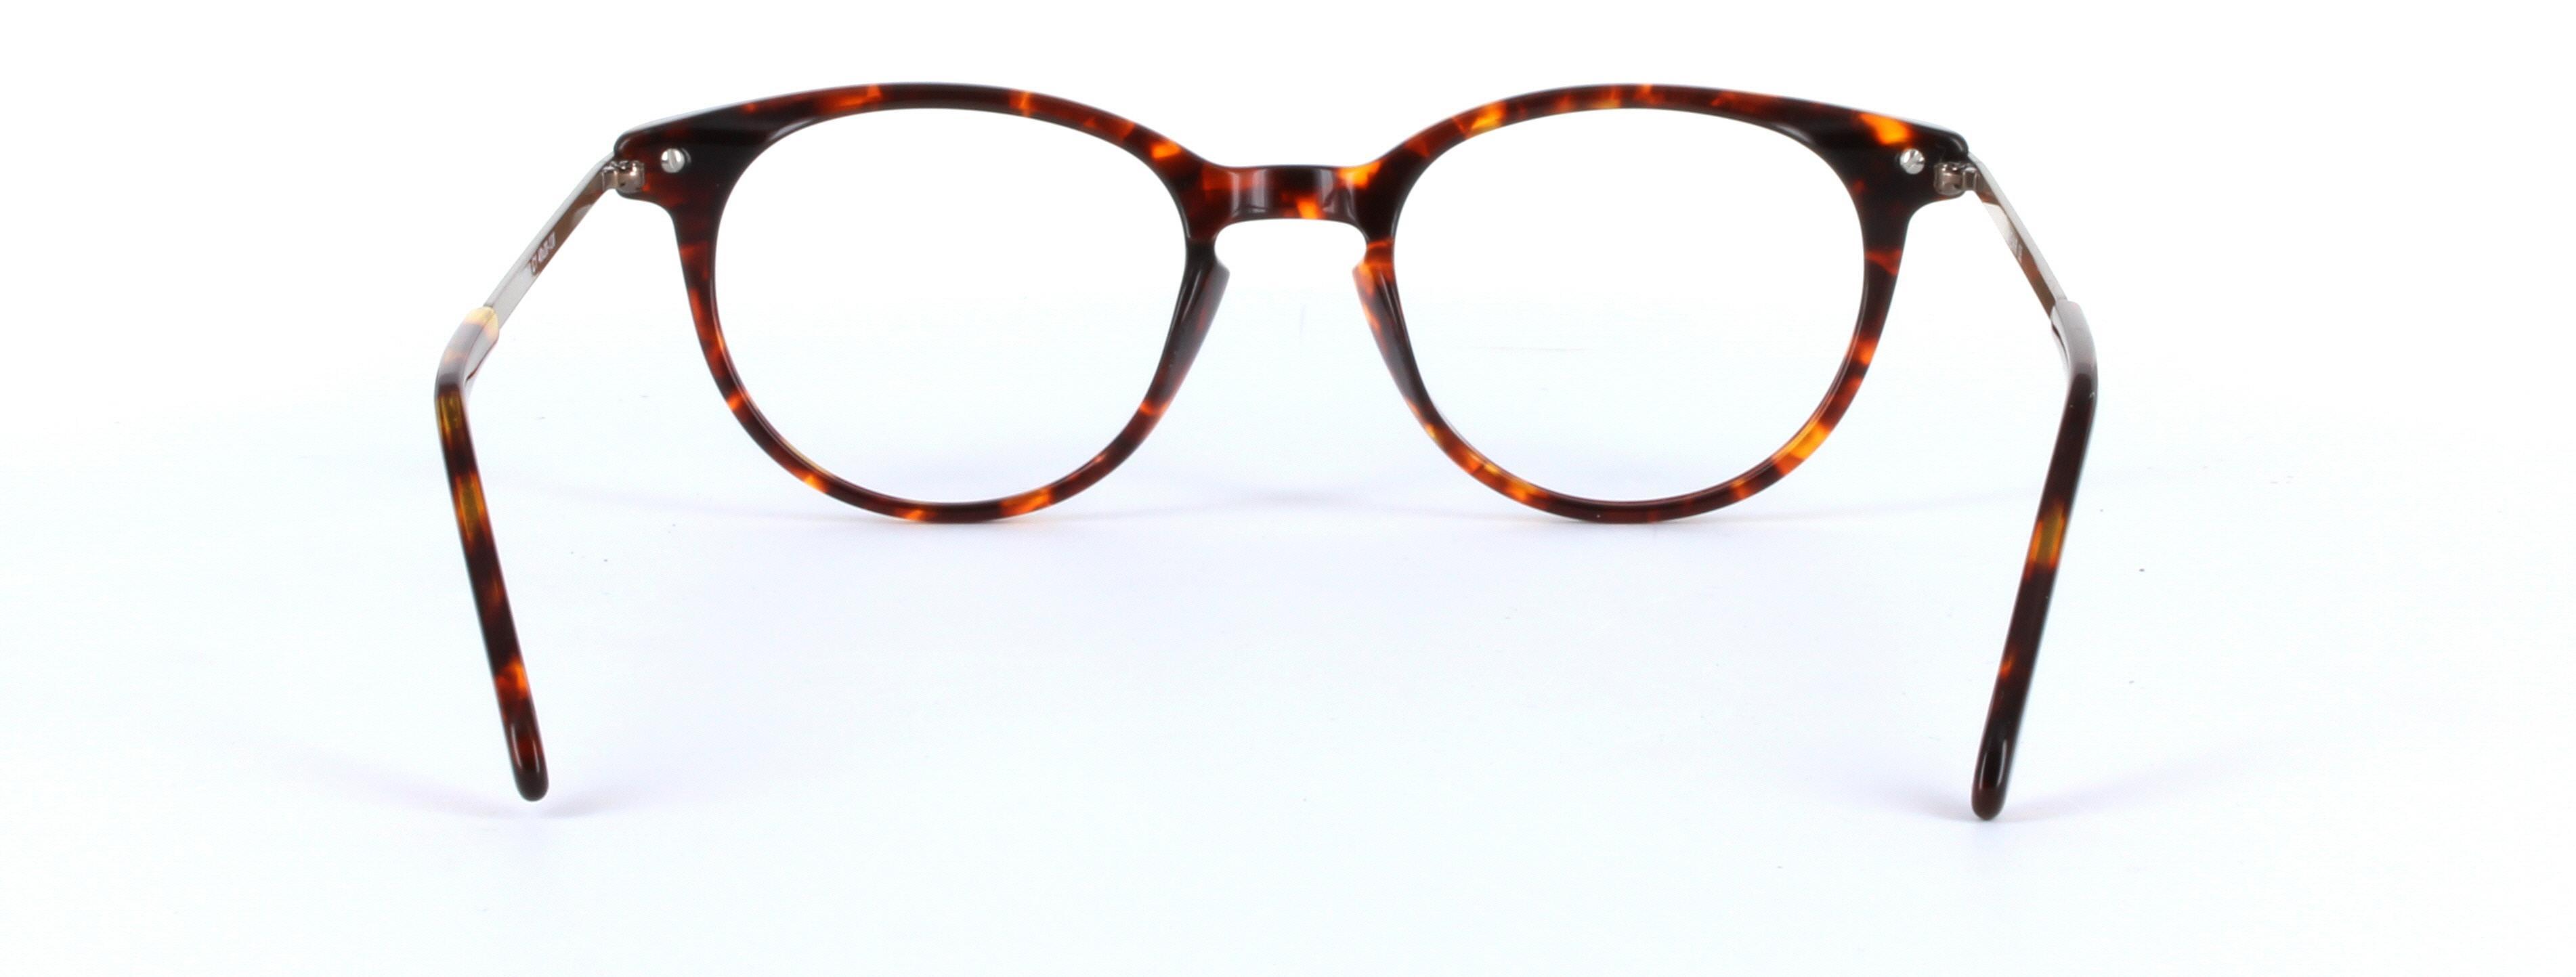 Amanda Tortoise Full Rim Round Plastic Glasses - Image View 3